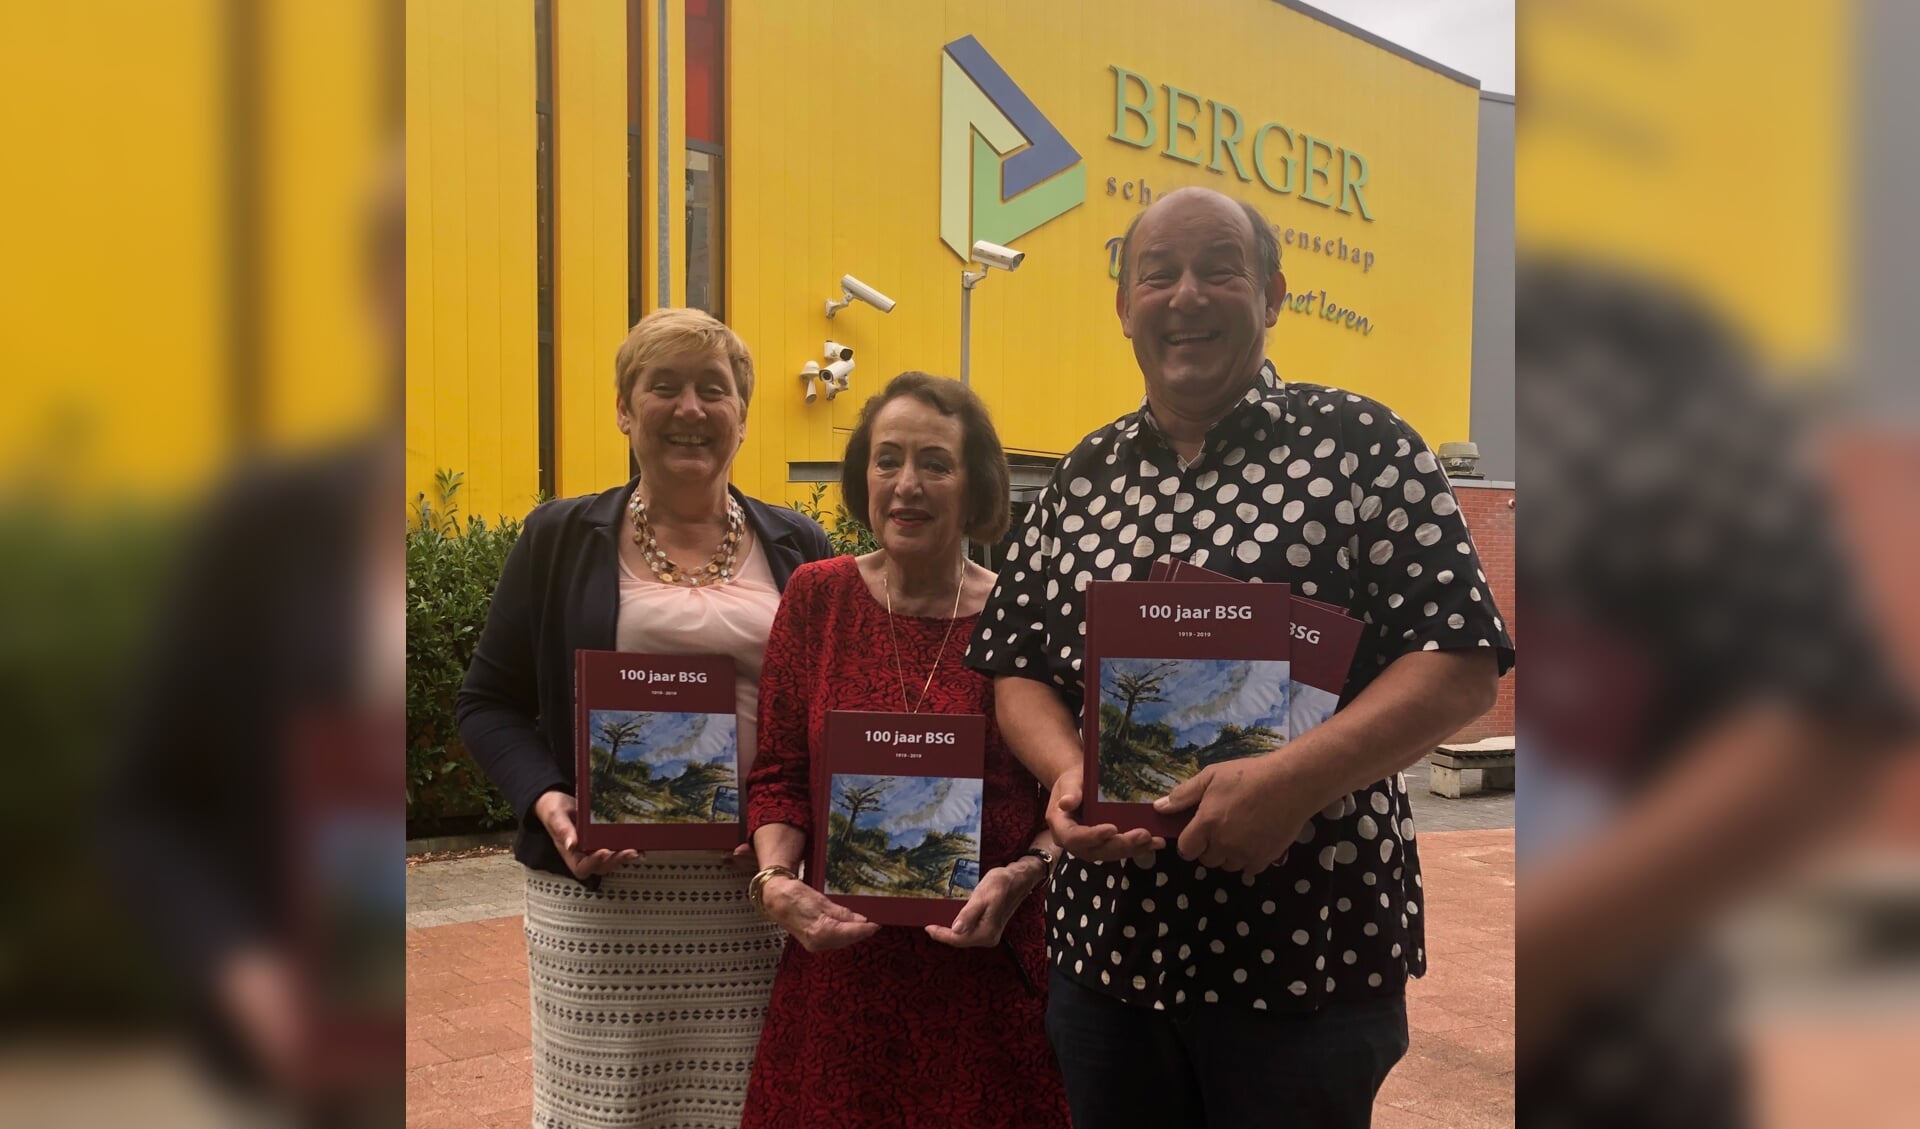 De drie redacteuren Harry Burgering, Irene Oudes en Hélène Jonker-Buscher presenteren met trots het jubileumboek 100 jaar Berger Scholengemeenschap. 